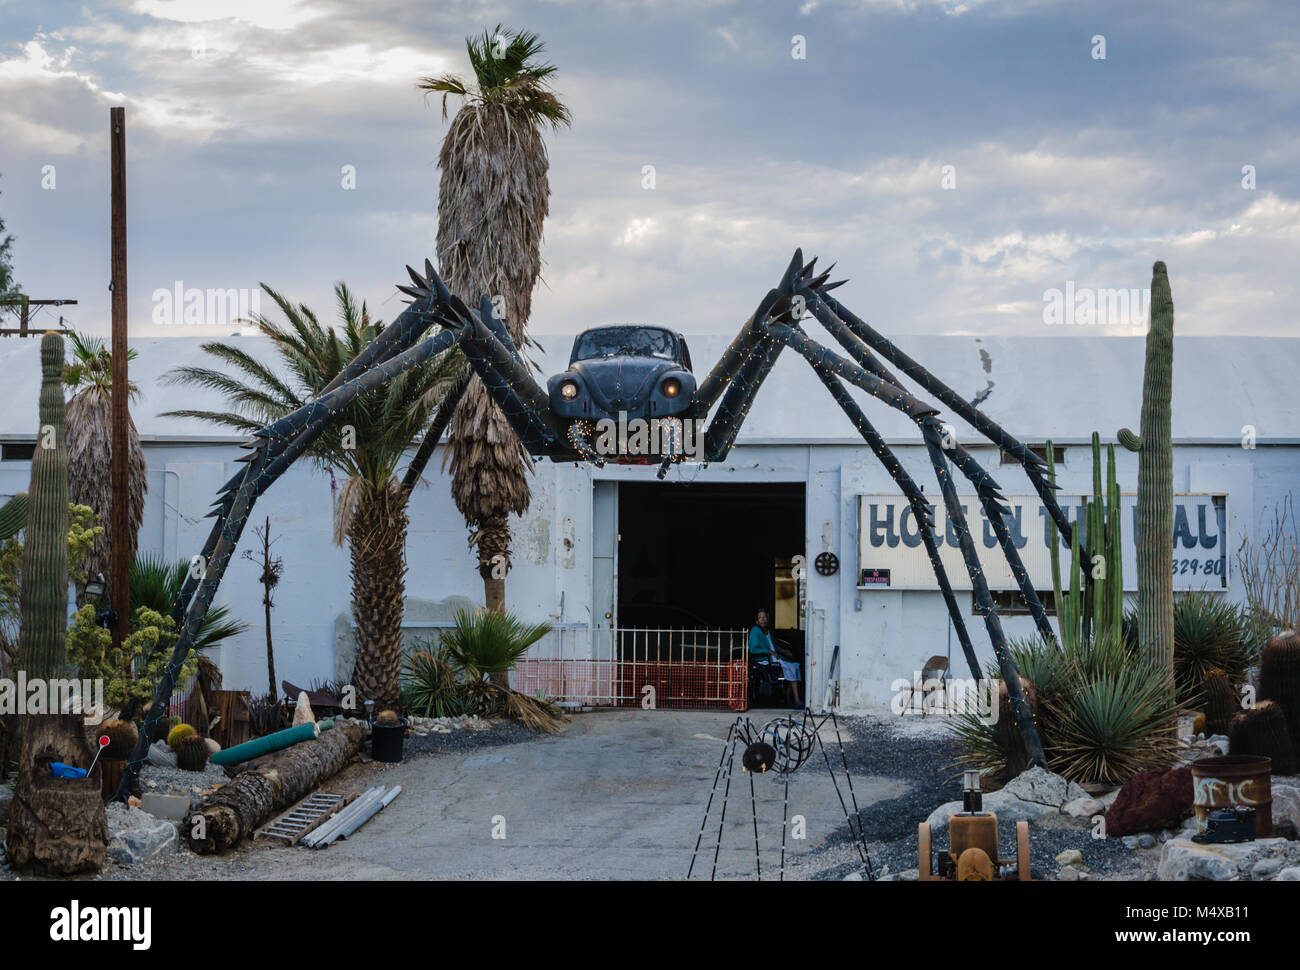 Am Straßenrand Attraktion in der Mojave Wüste verfügt über eine riesige schwarze Spinne zusammen mit einem volkswagon Bug Auto in der Mitte geschweißt. Stockfoto